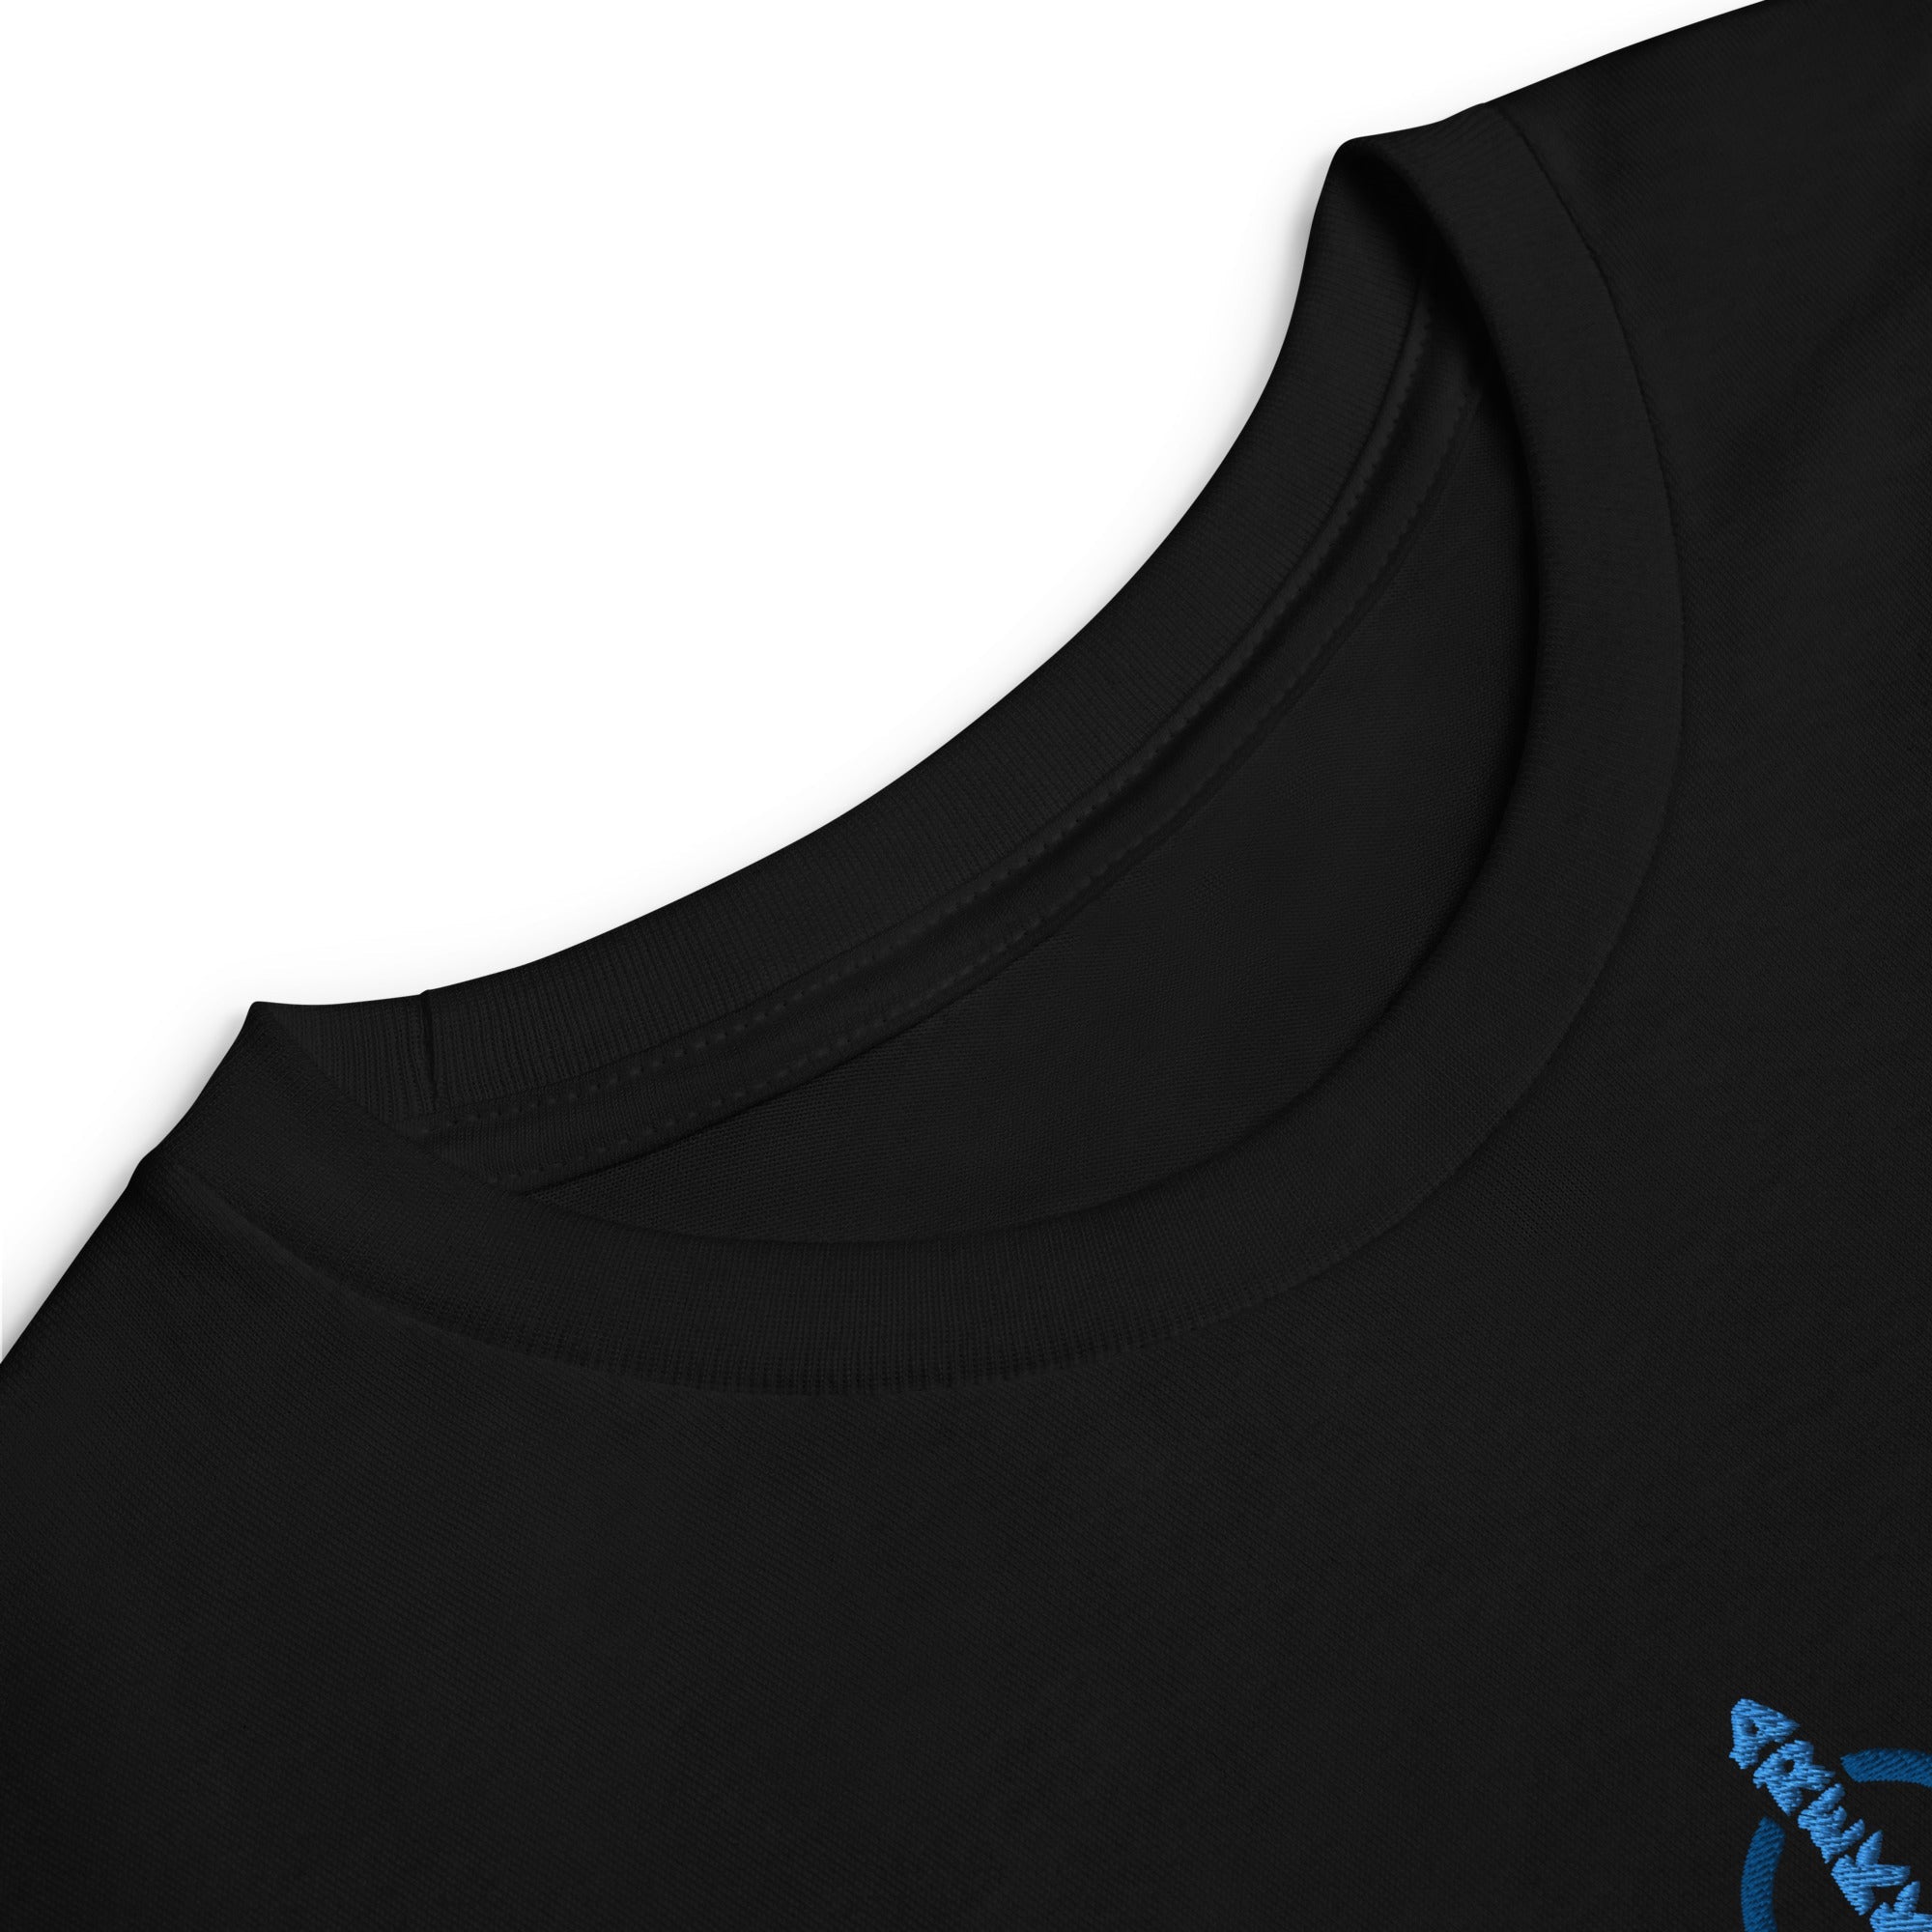 Unisex Youth Long Sleeve Shirt-6